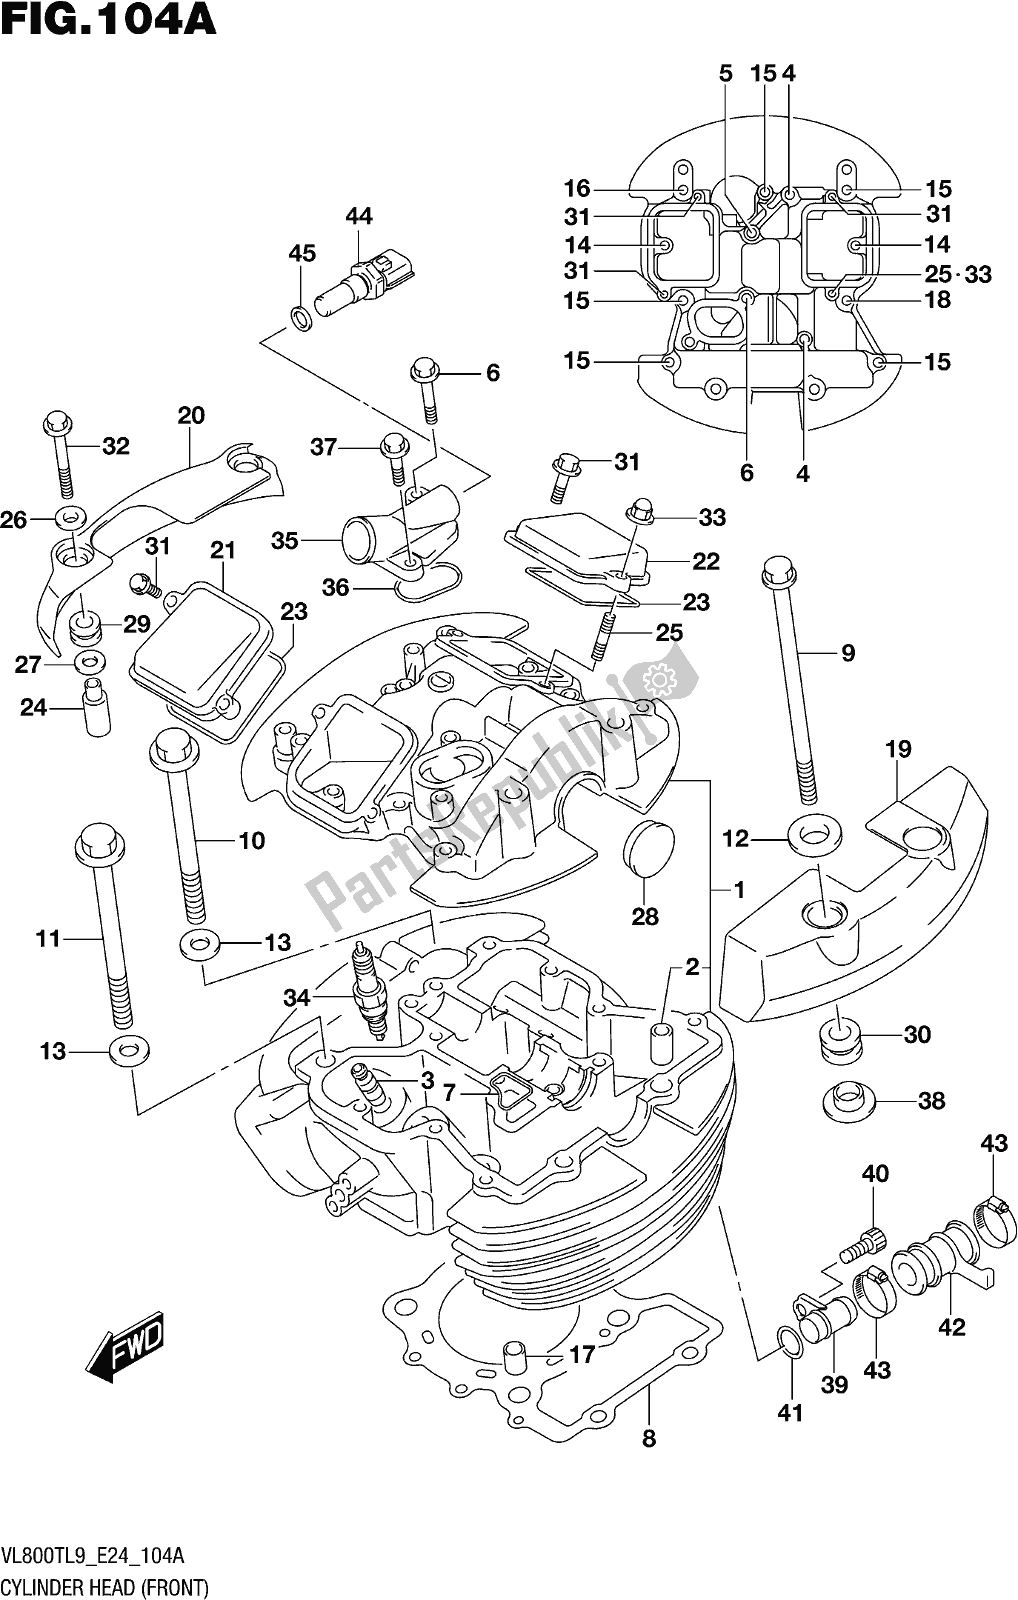 Alle onderdelen voor de Fig. 104a Cylinder Head (front) van de Suzuki VL 800T 2019